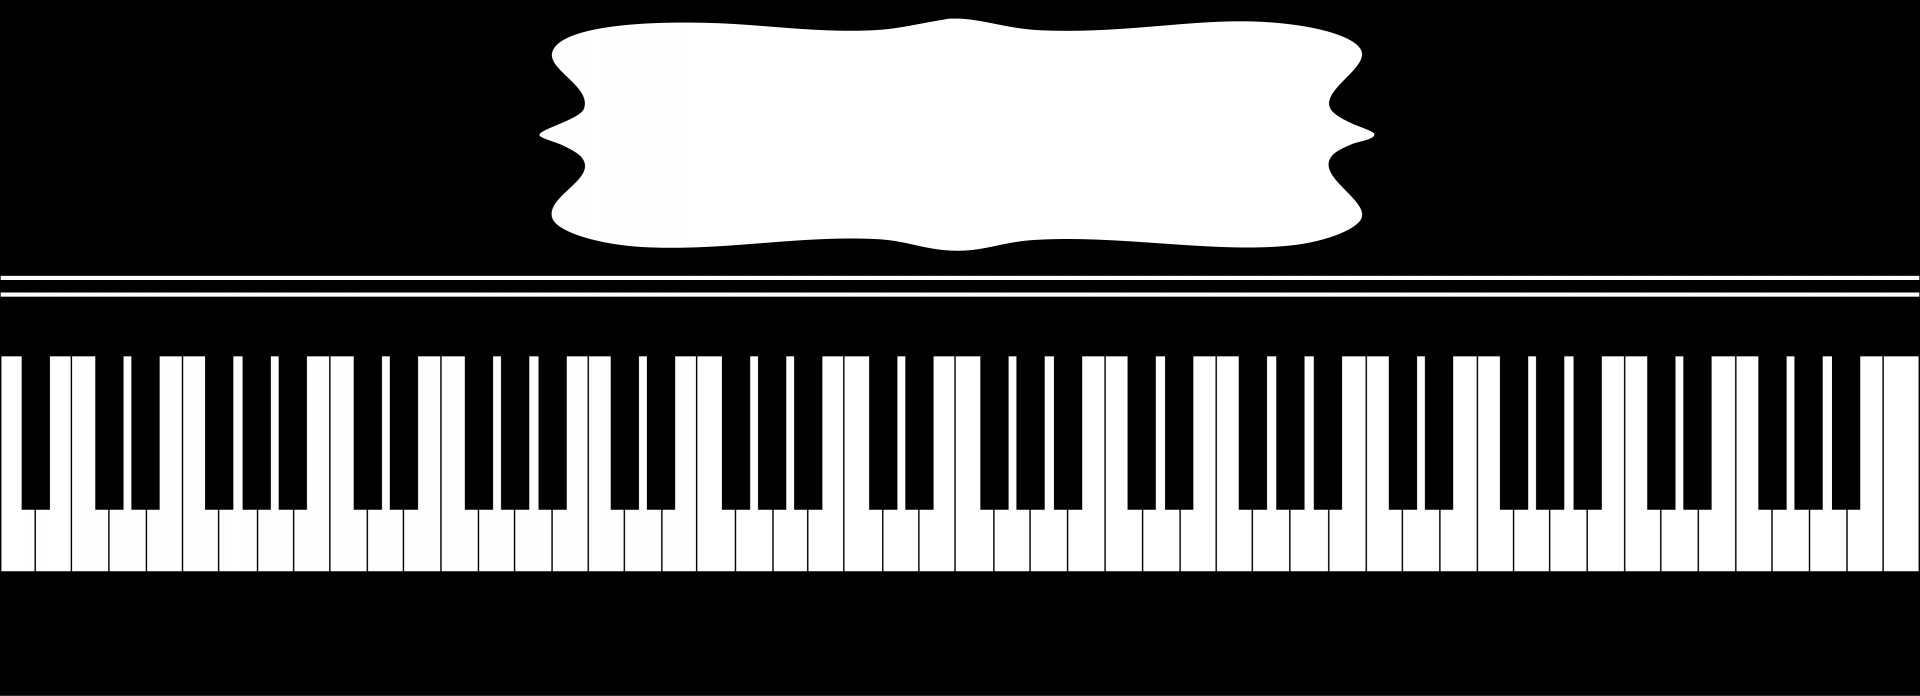 Клавиатура пианино вектор